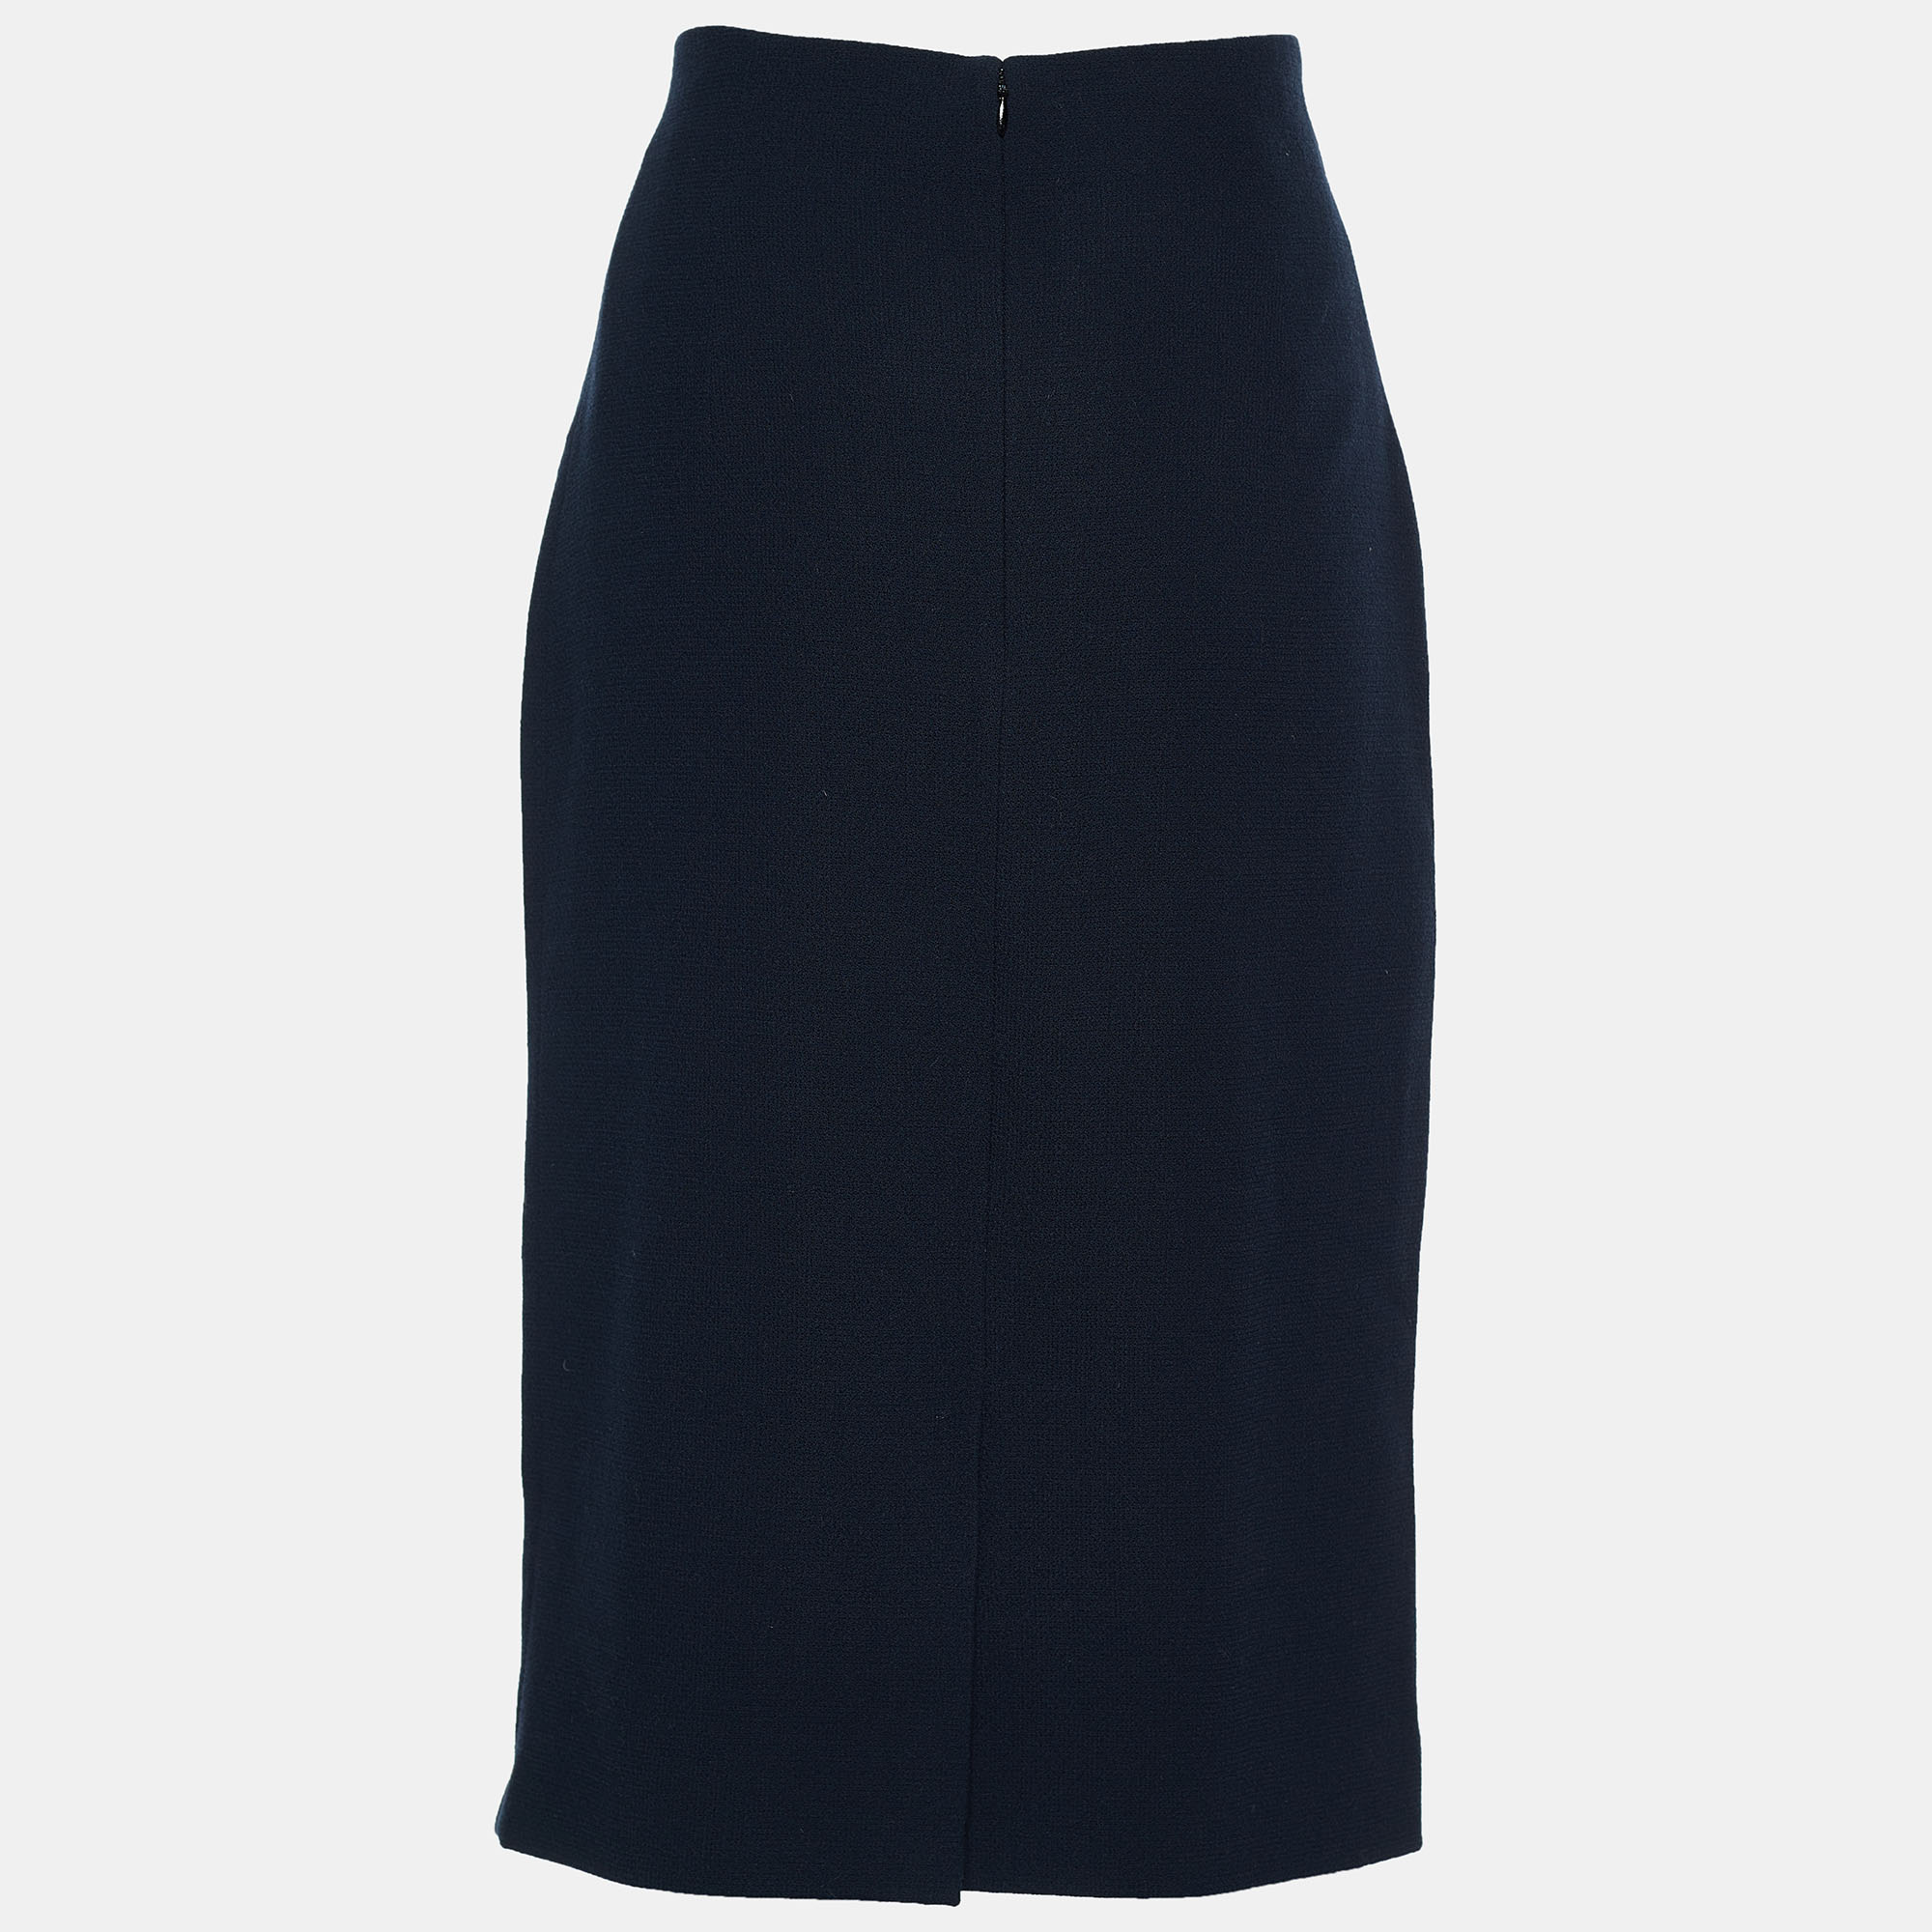 

Dior Midnight Blue Textured Wool High Waist Pencil Skirt